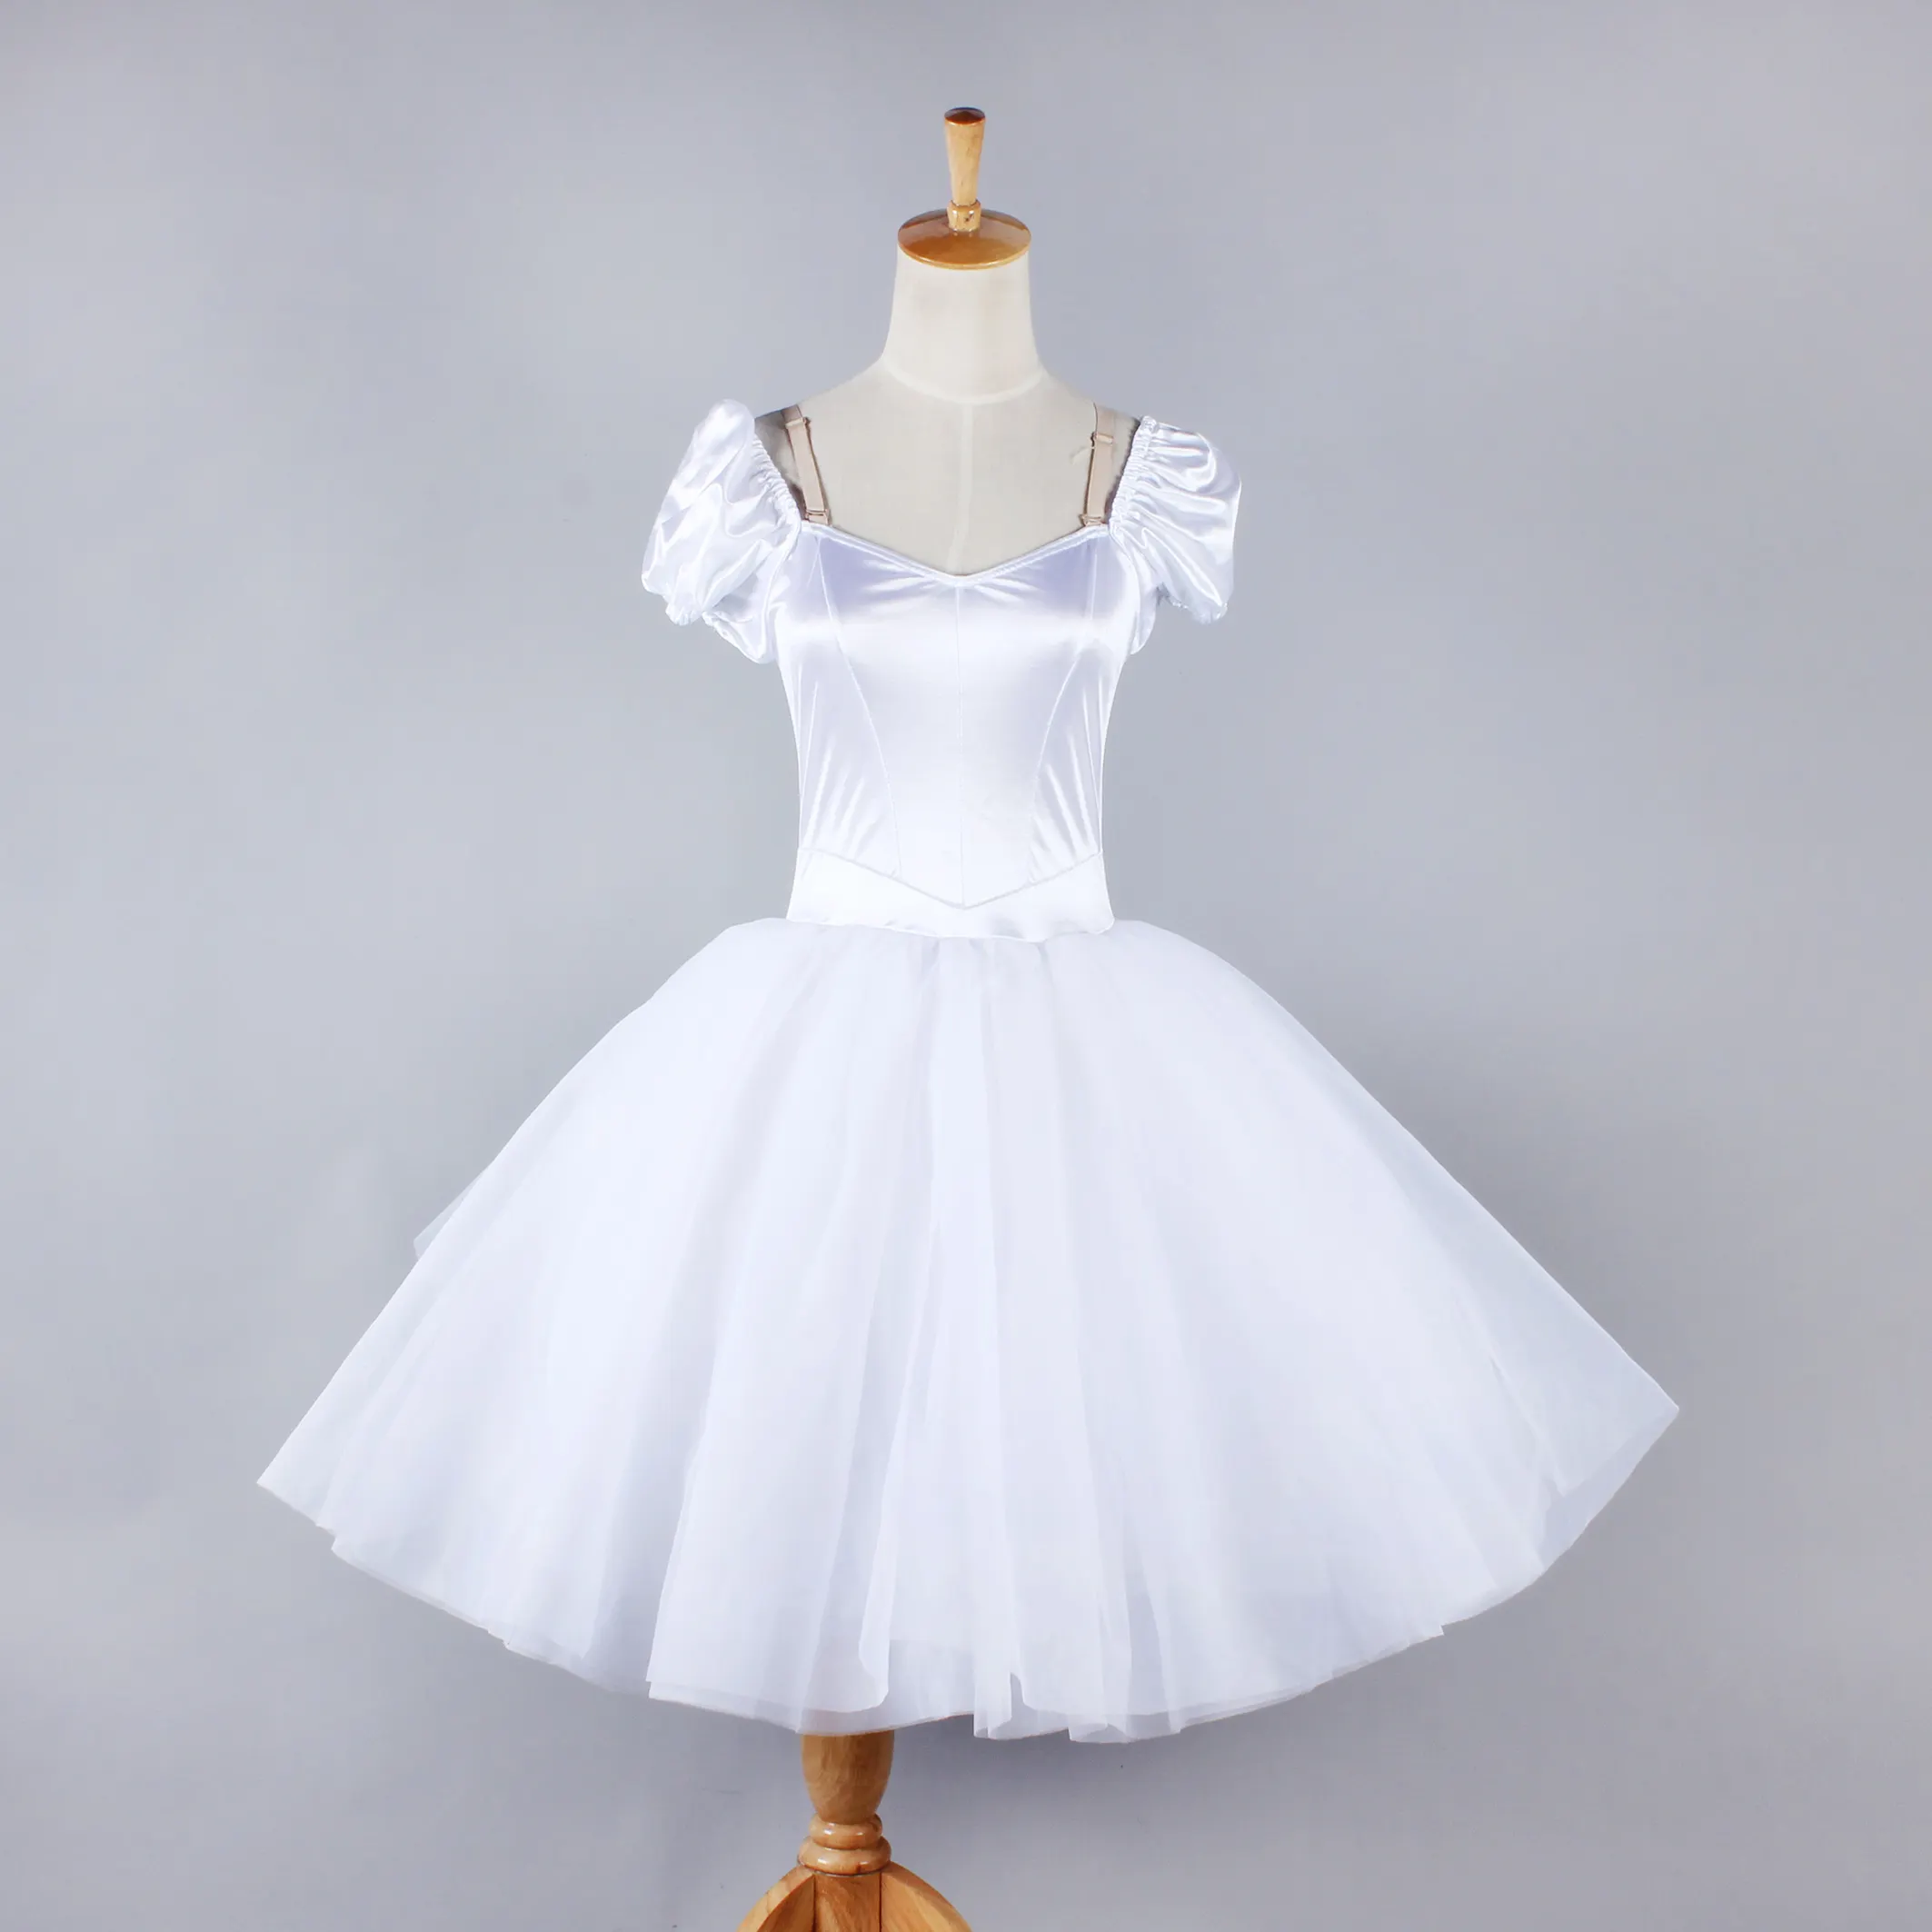 Белое балетное платье-пачка для взрослых и девочек, романтическая Атласная Одежда для танцев, белый длинный костюм для выступлений и танцев